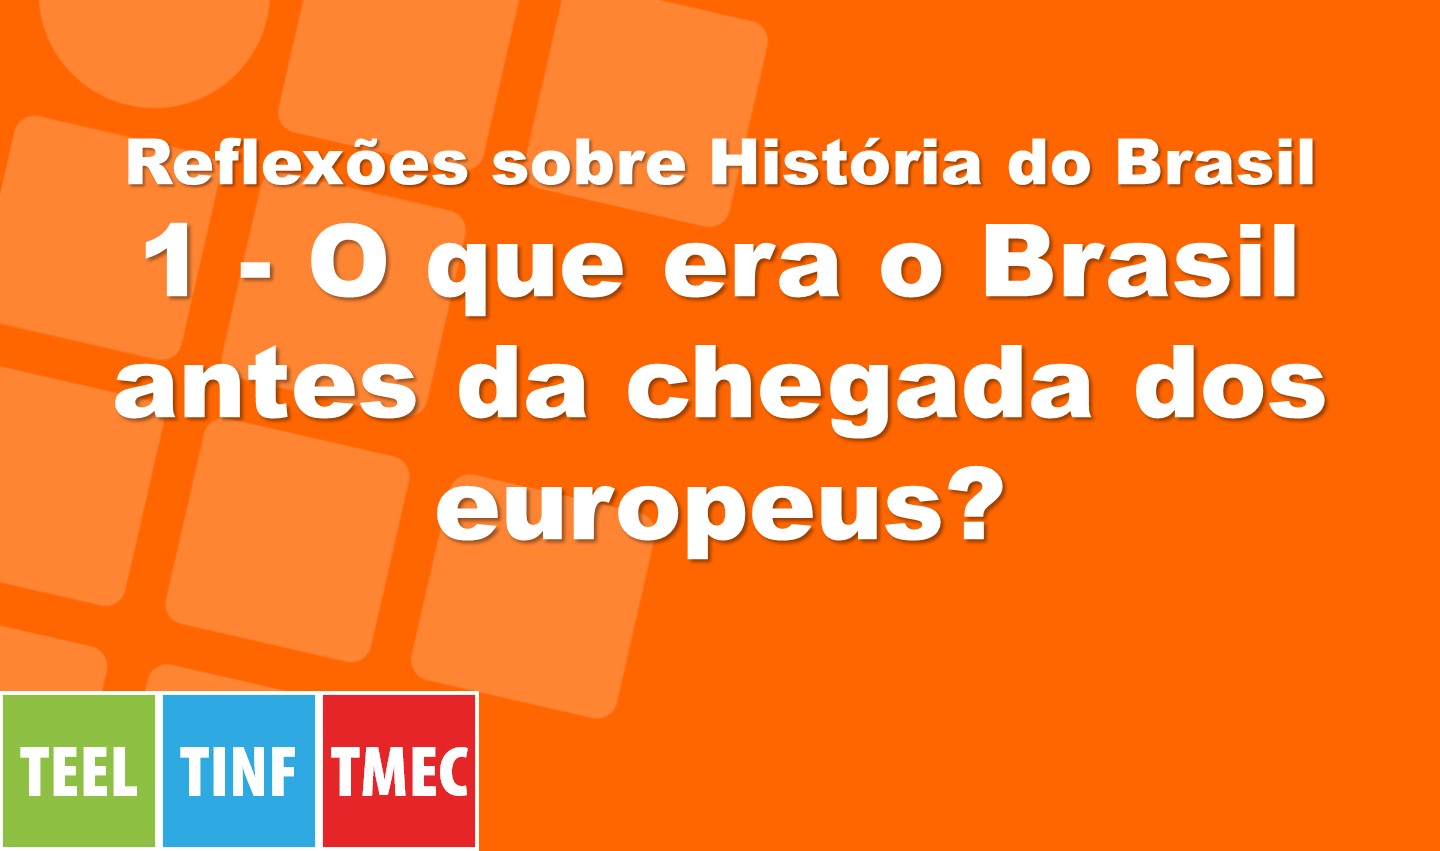 Reflexões sobre História do Brasil 1 - O que era o Brasil antes da chegada dos europeus?